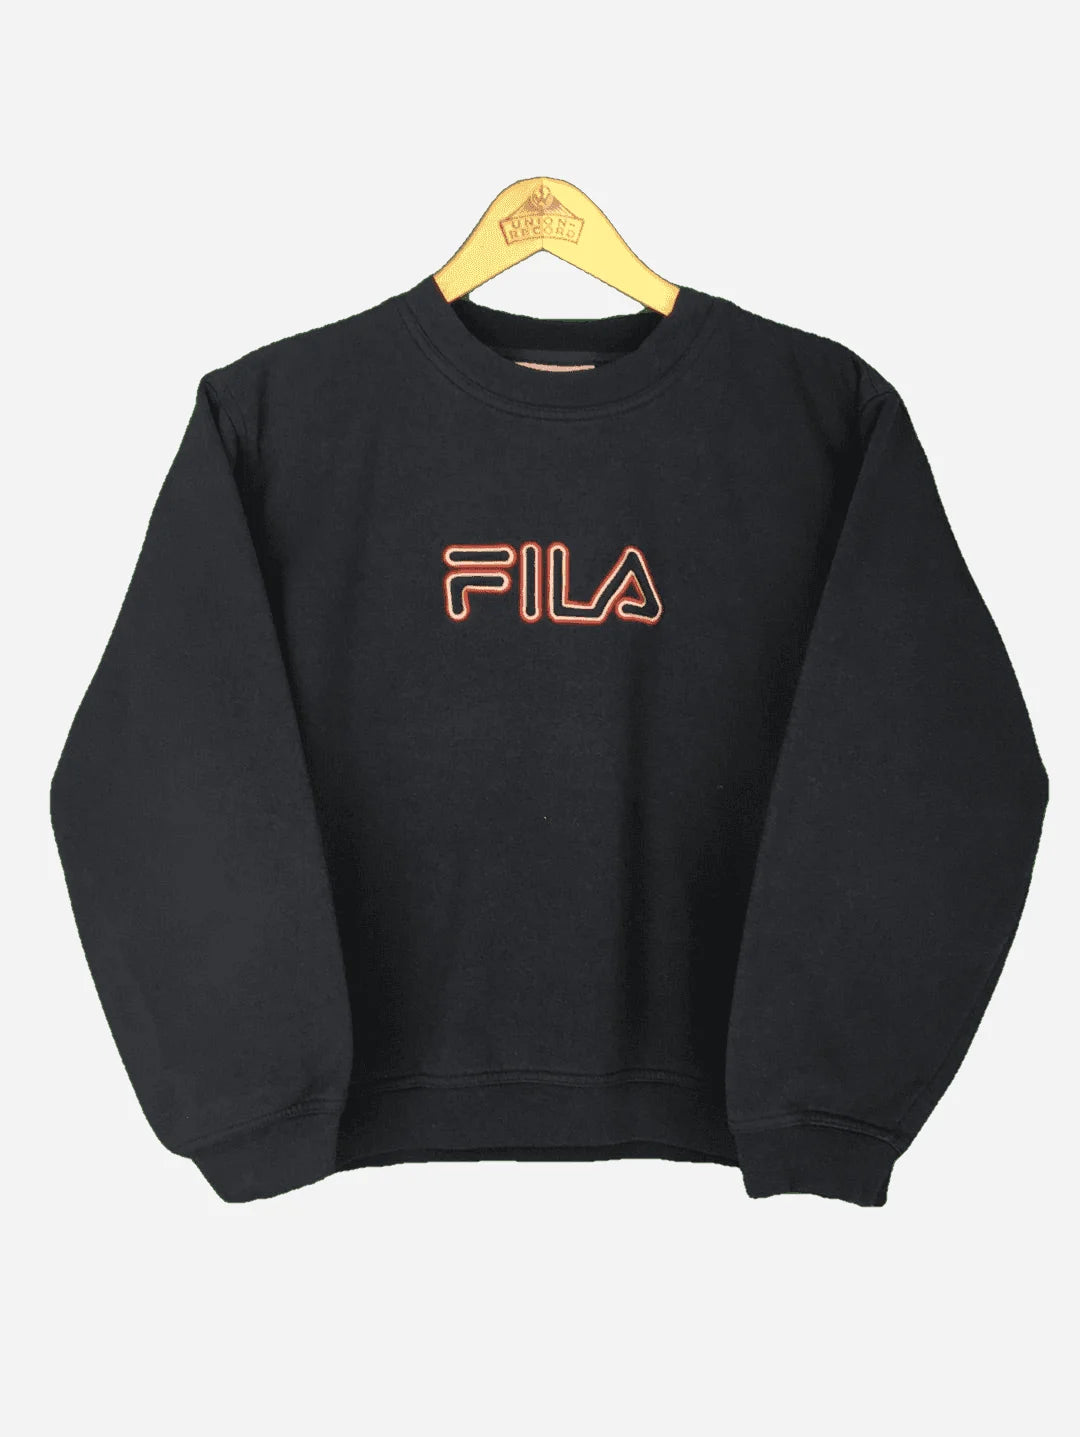 Fila Sweater (XXS)